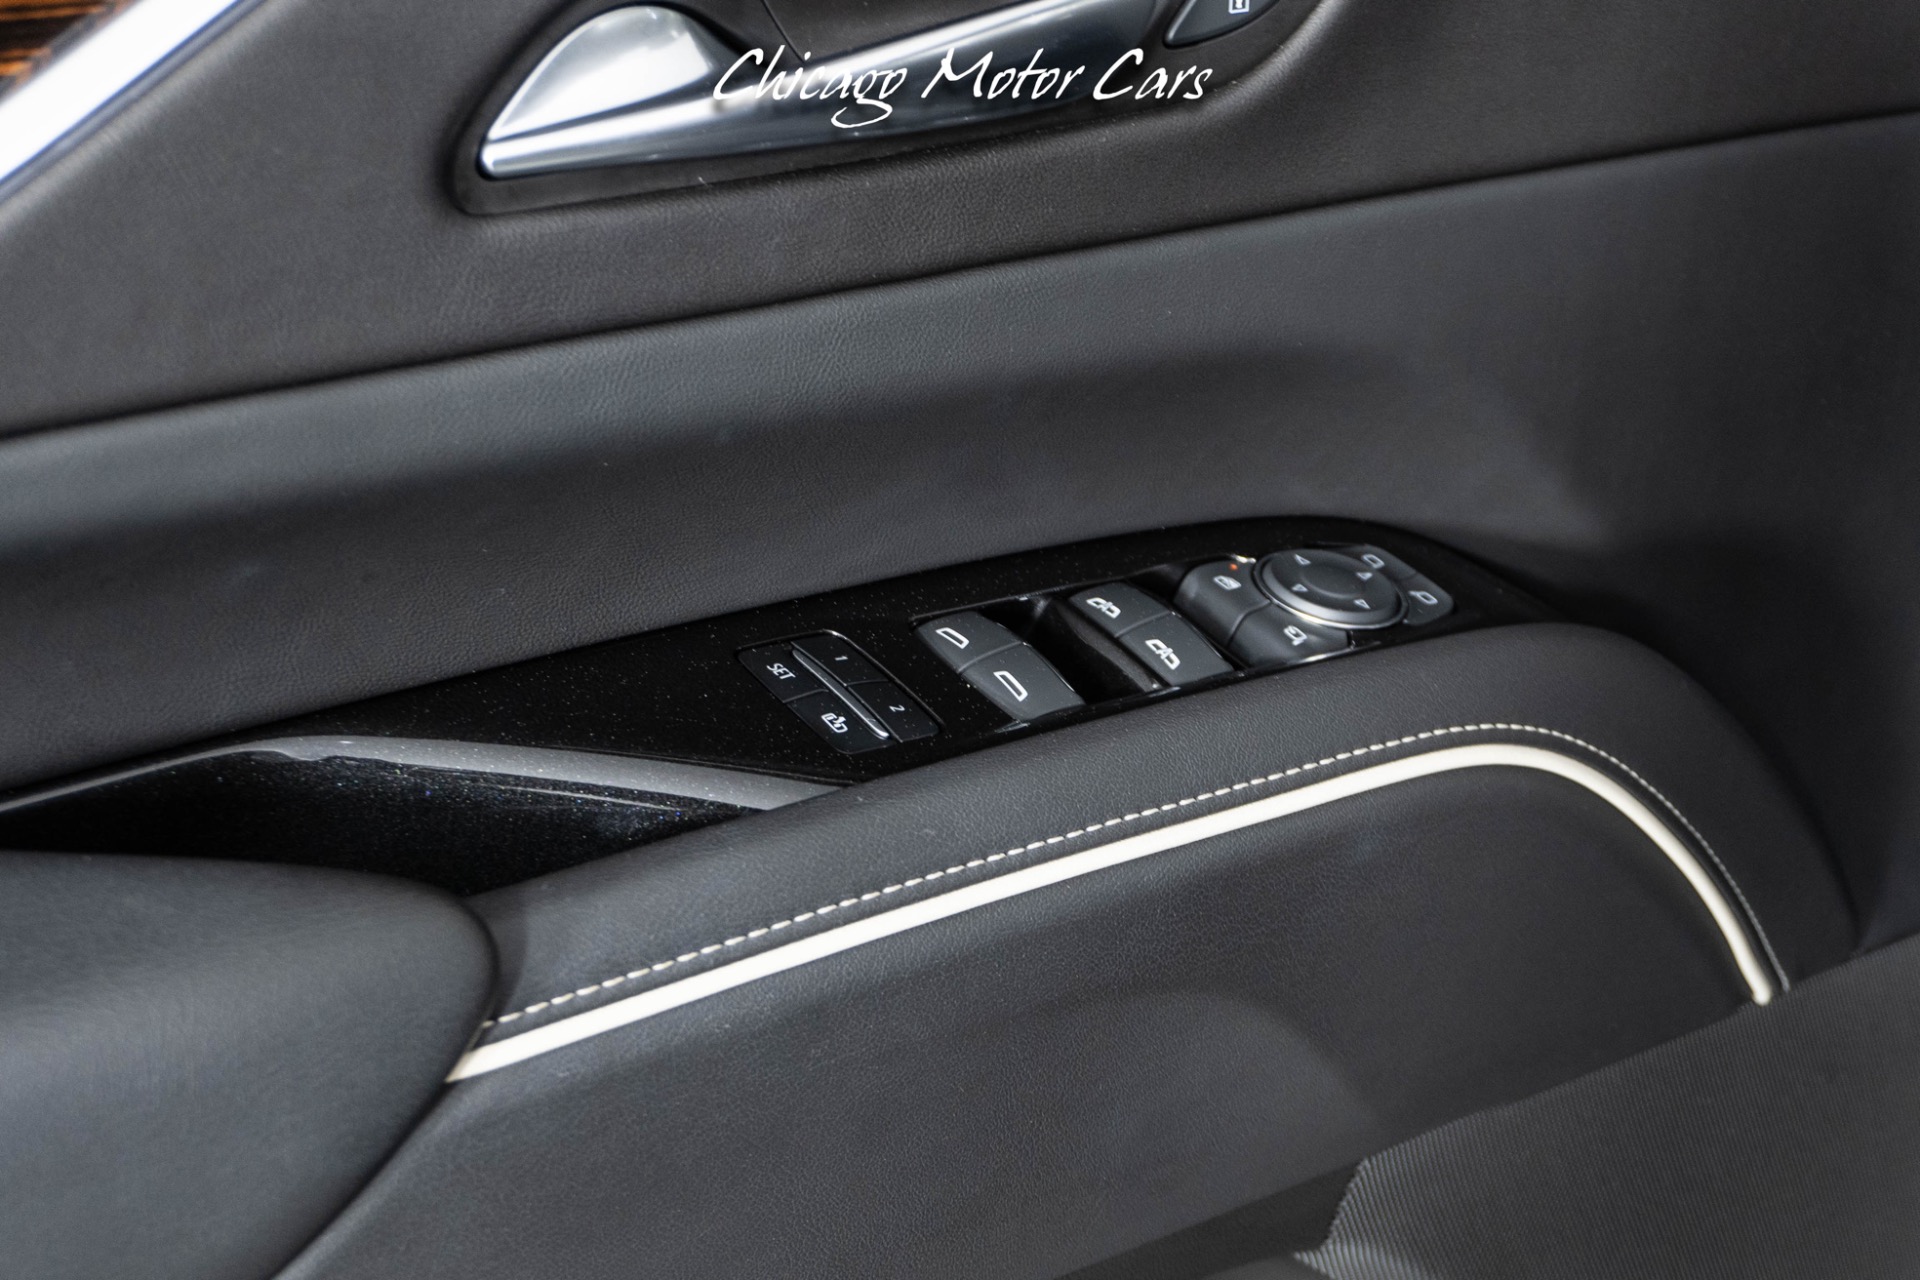 Used-2022-Cadillac-Escalade-ESV-Luxury-3-Row-SUV-Heated-Seats-Heated-Steering-Wheel-Black-Out-Pkg